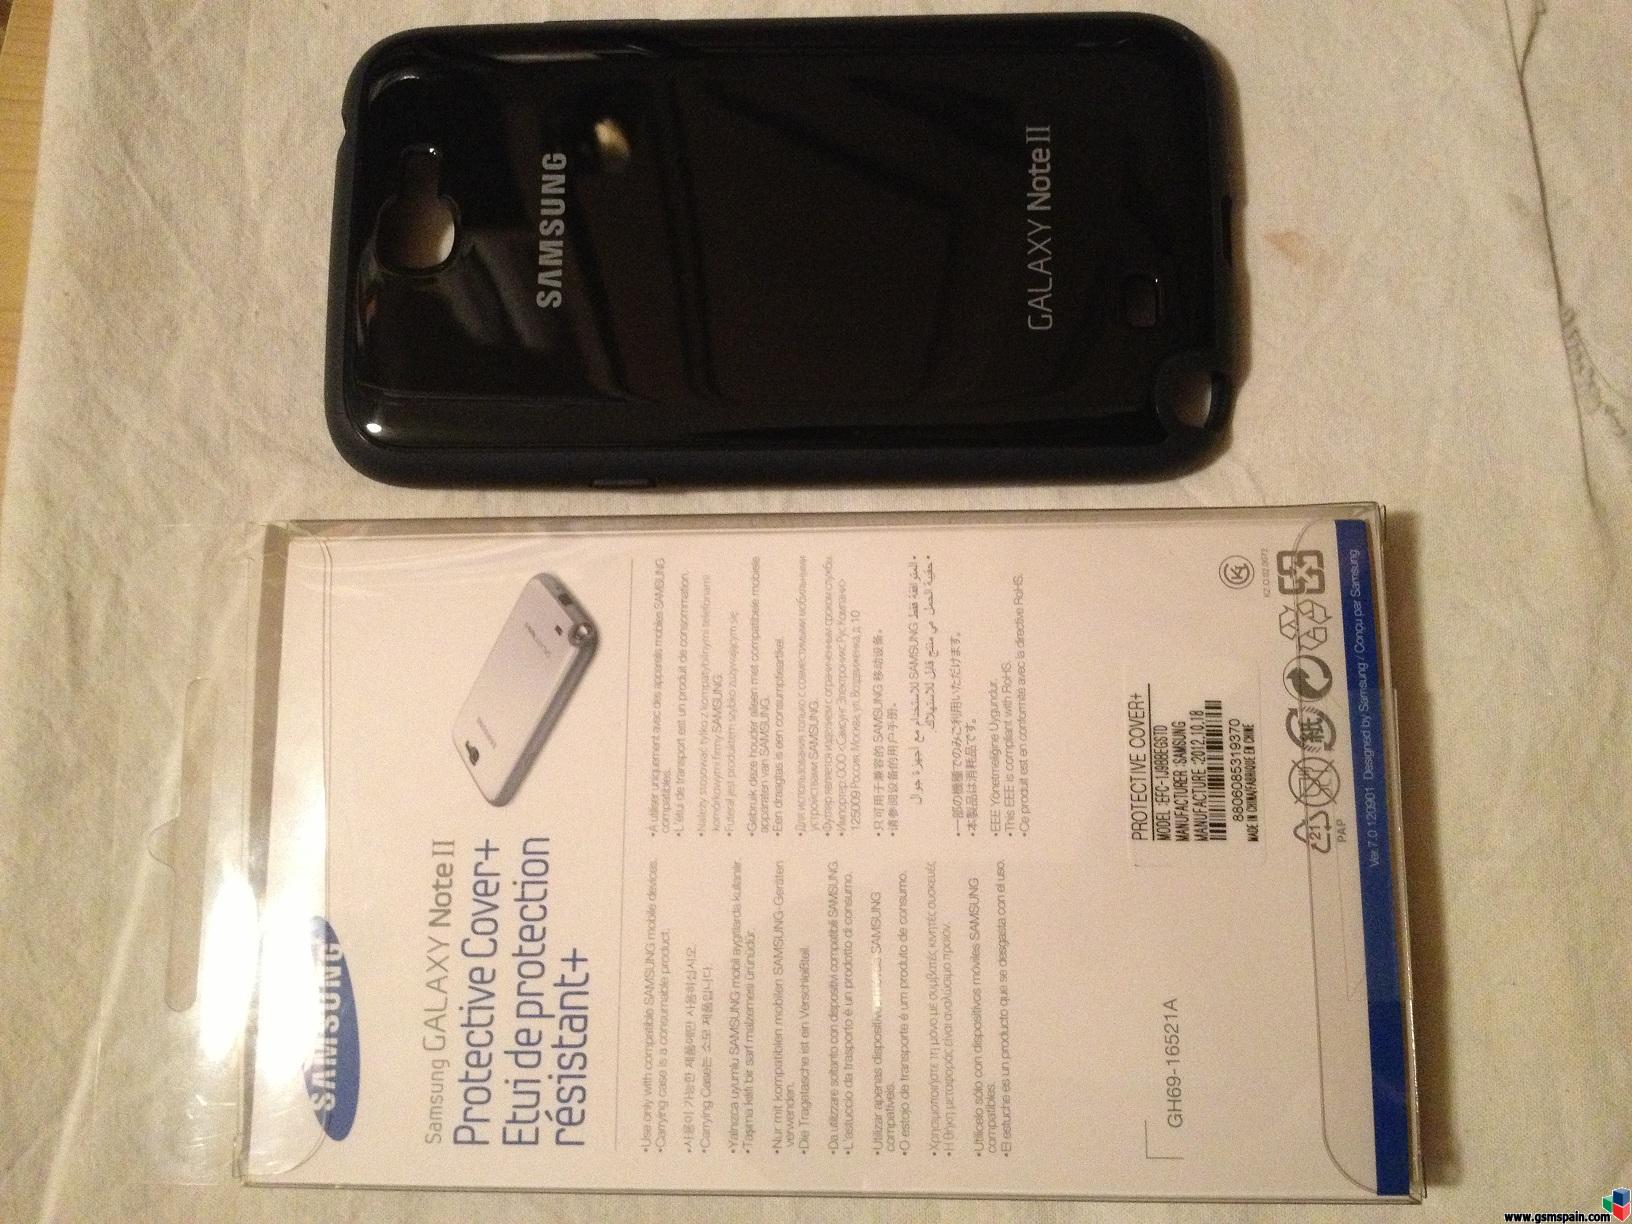 [VENDO] (Posible venta si alguien lo quiere) Galaxy Note 2 Libre y nuevo. GRIS